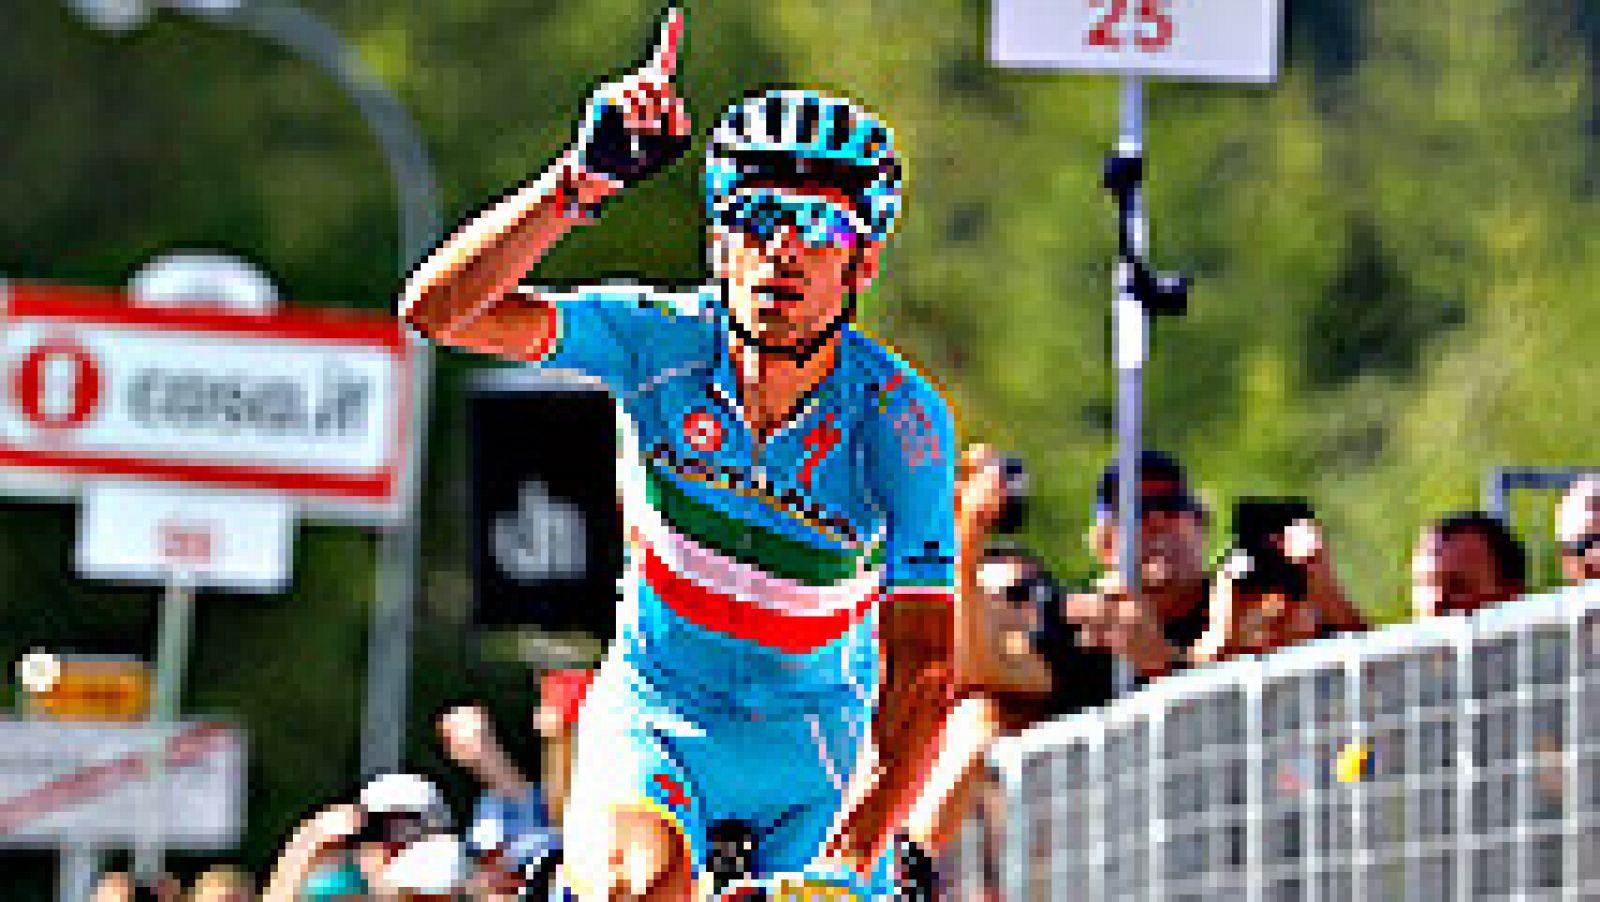 El italiano Vincenzo Nibali (Astana) se ha impuesto en solitario en la decimonovena etapa del Giro de Italia, disputada entre Pinerolo y Risoul, de 162 kilómetros, por delante del español Mikel Nieve, mientras que el colombiano Esteban Chaves (Orica)